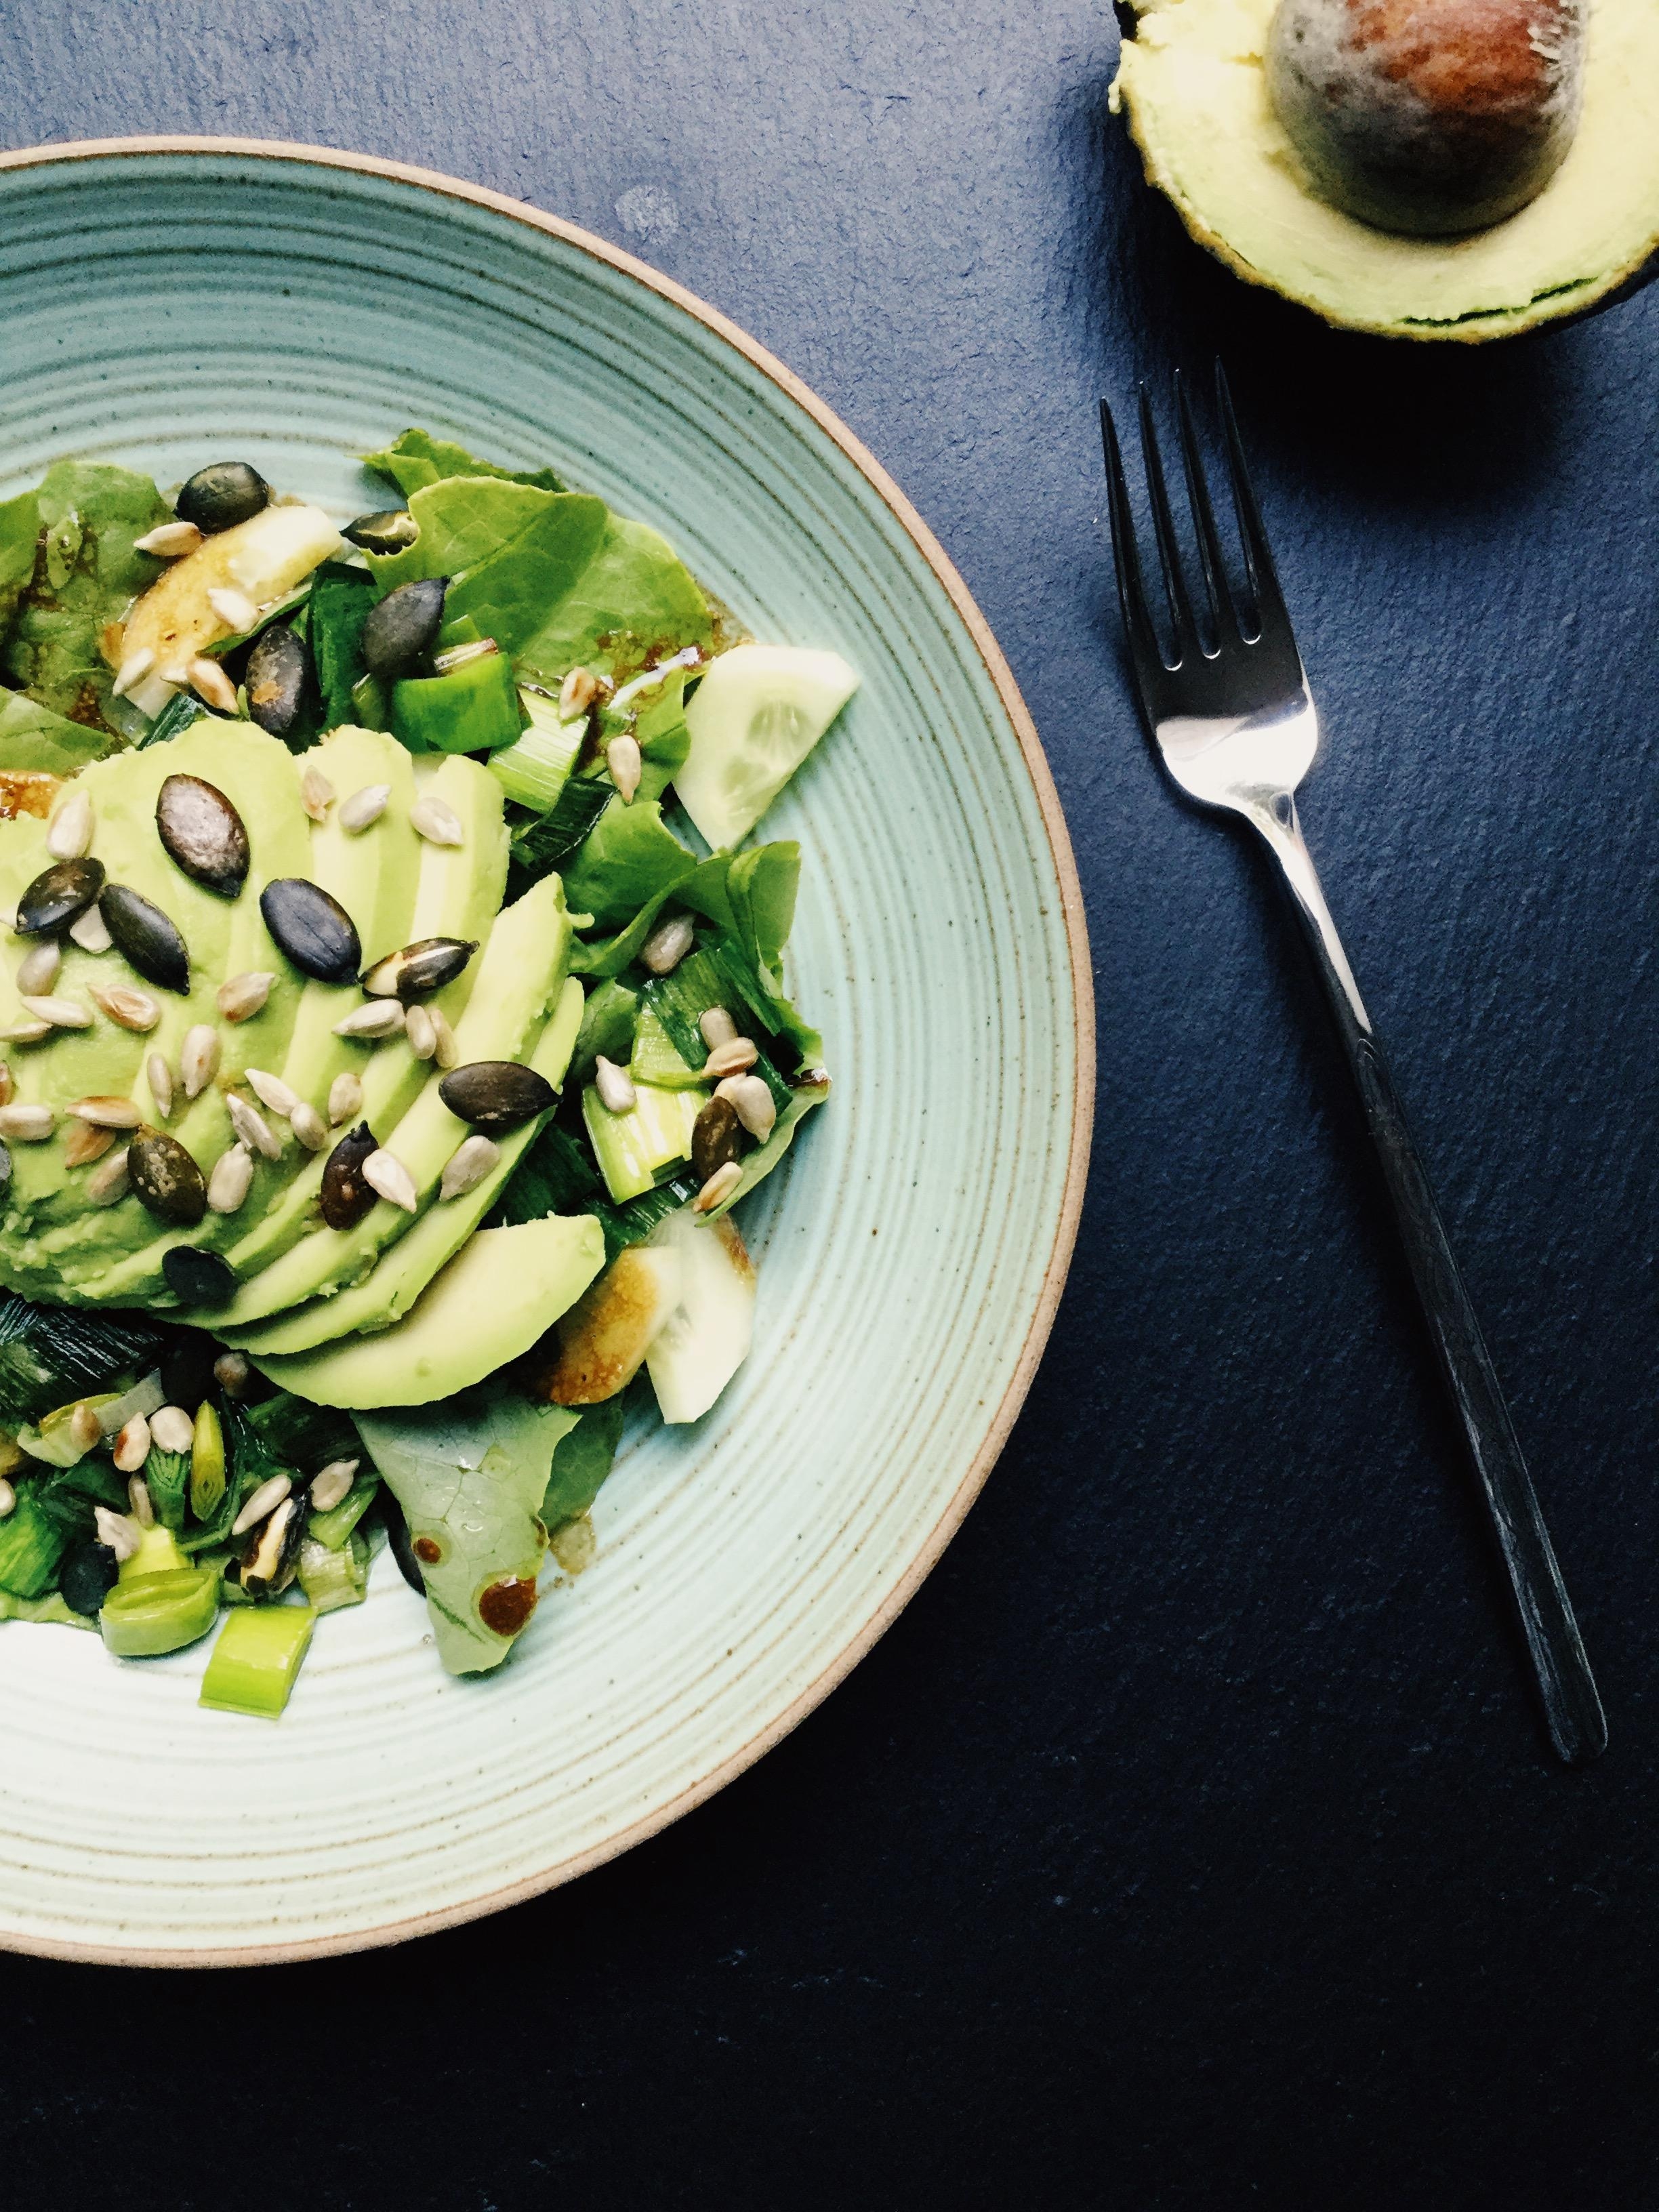 Köstlicher Salat mit Avocado 😍😋🌱#food #salat #avocado #gesund #plantbased #vegetarisch